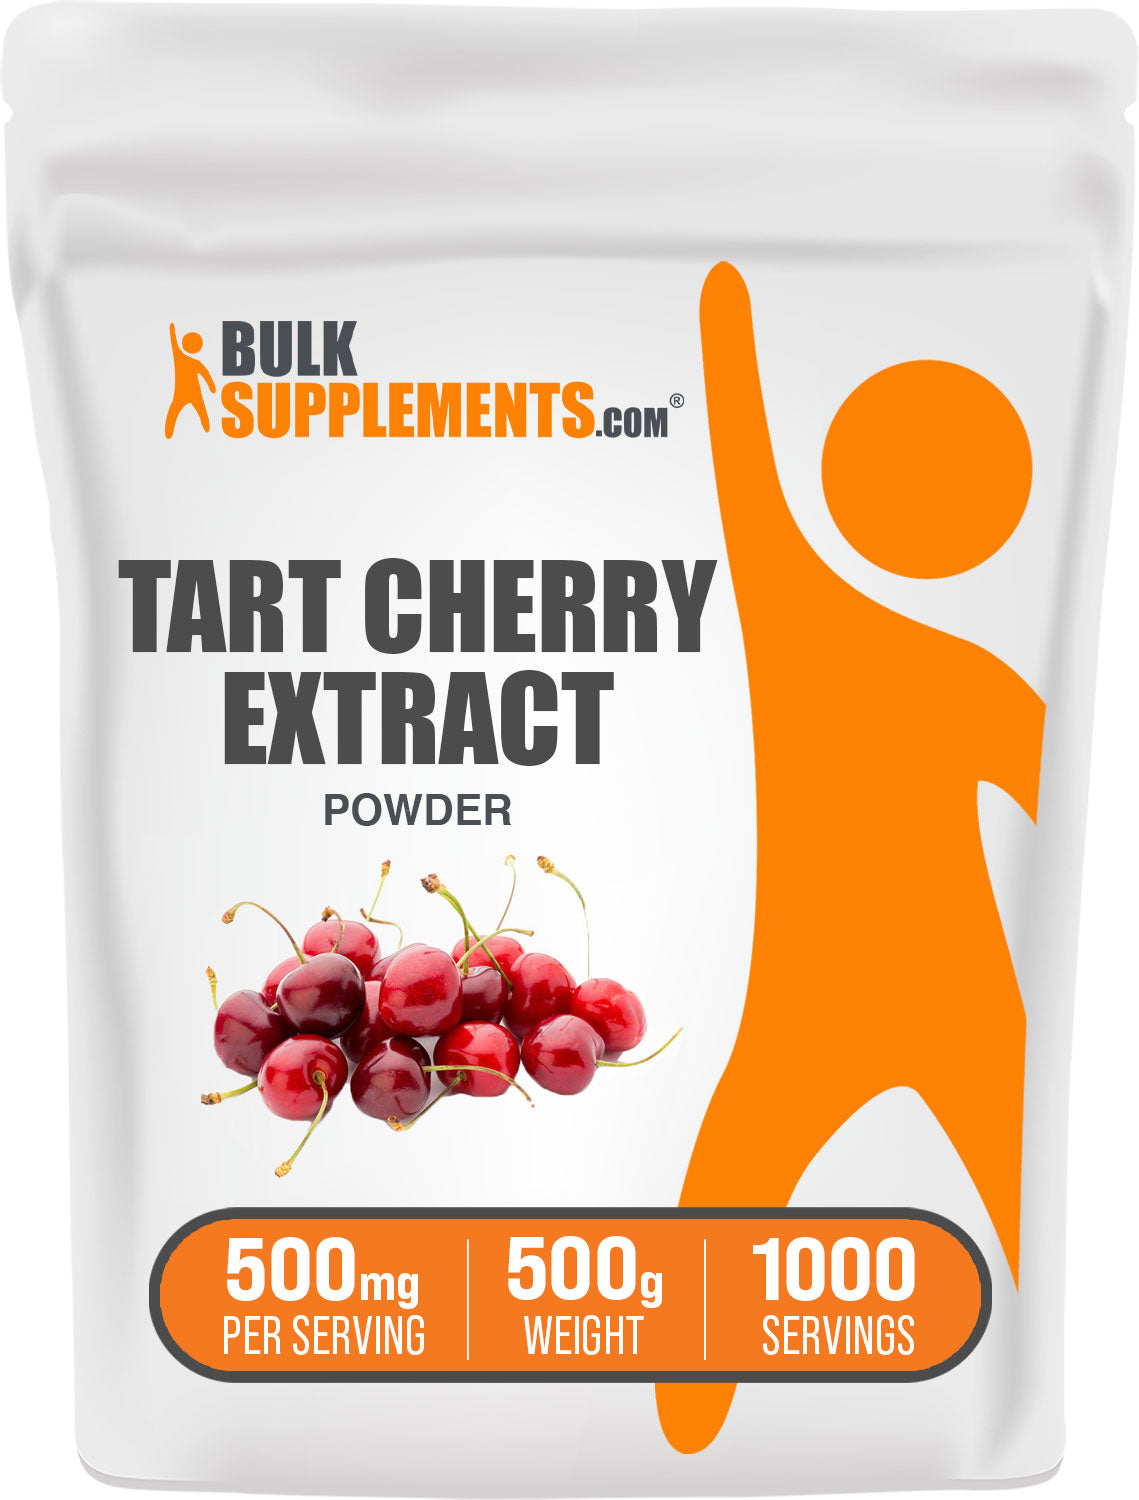 Tart Cherry Extract Powder 500g Bag